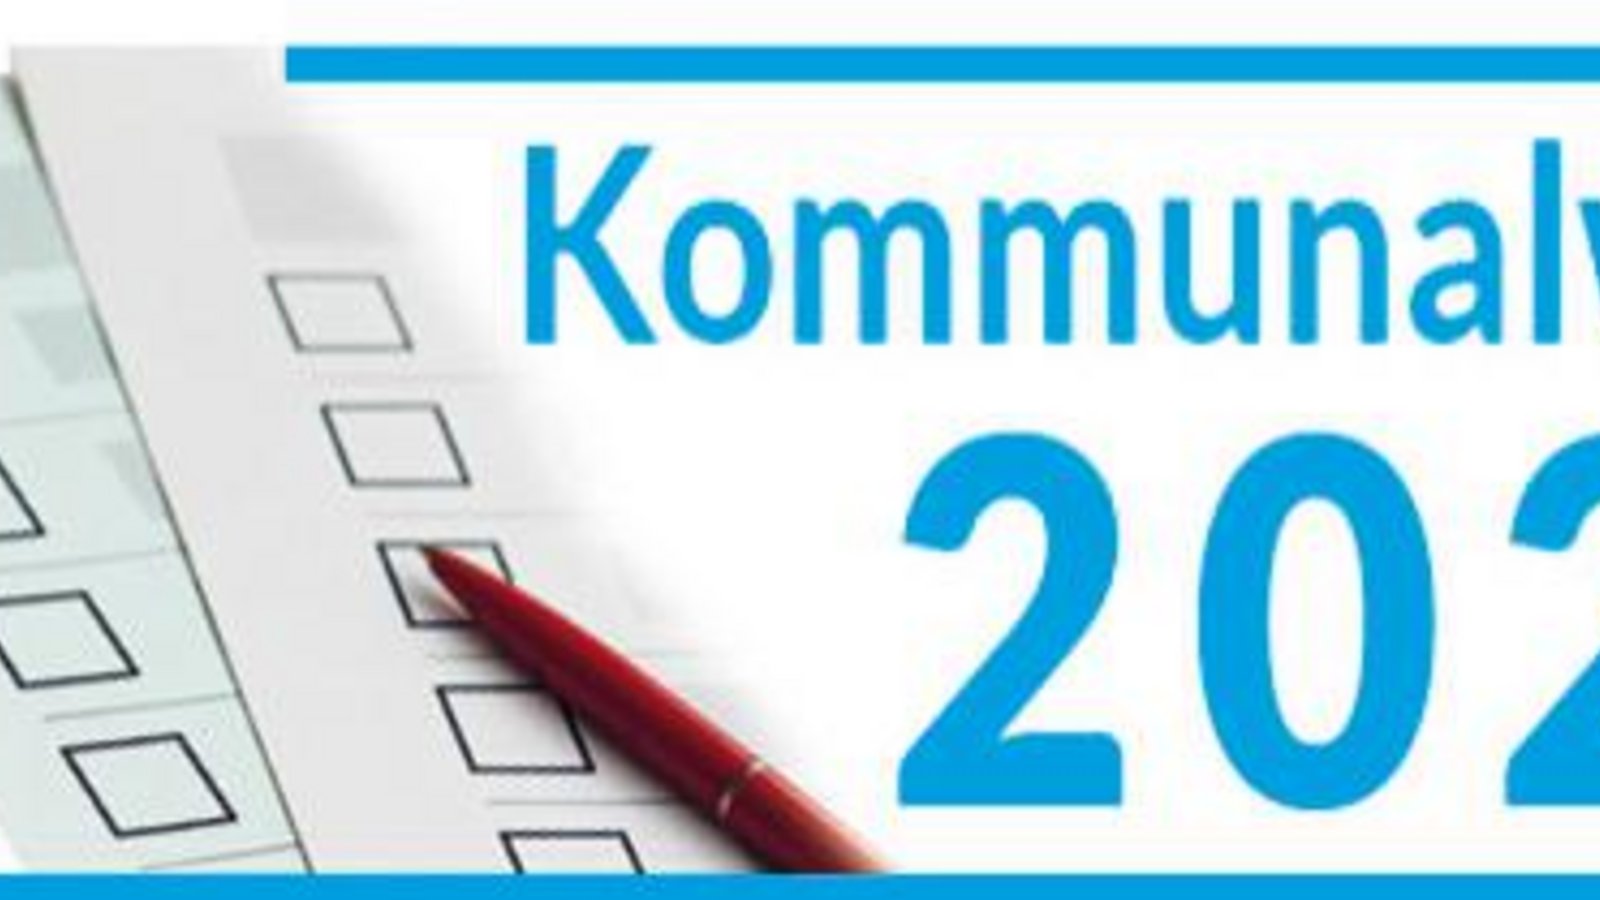 Logo Kommunalwahl 2024 Kommunalwahlen